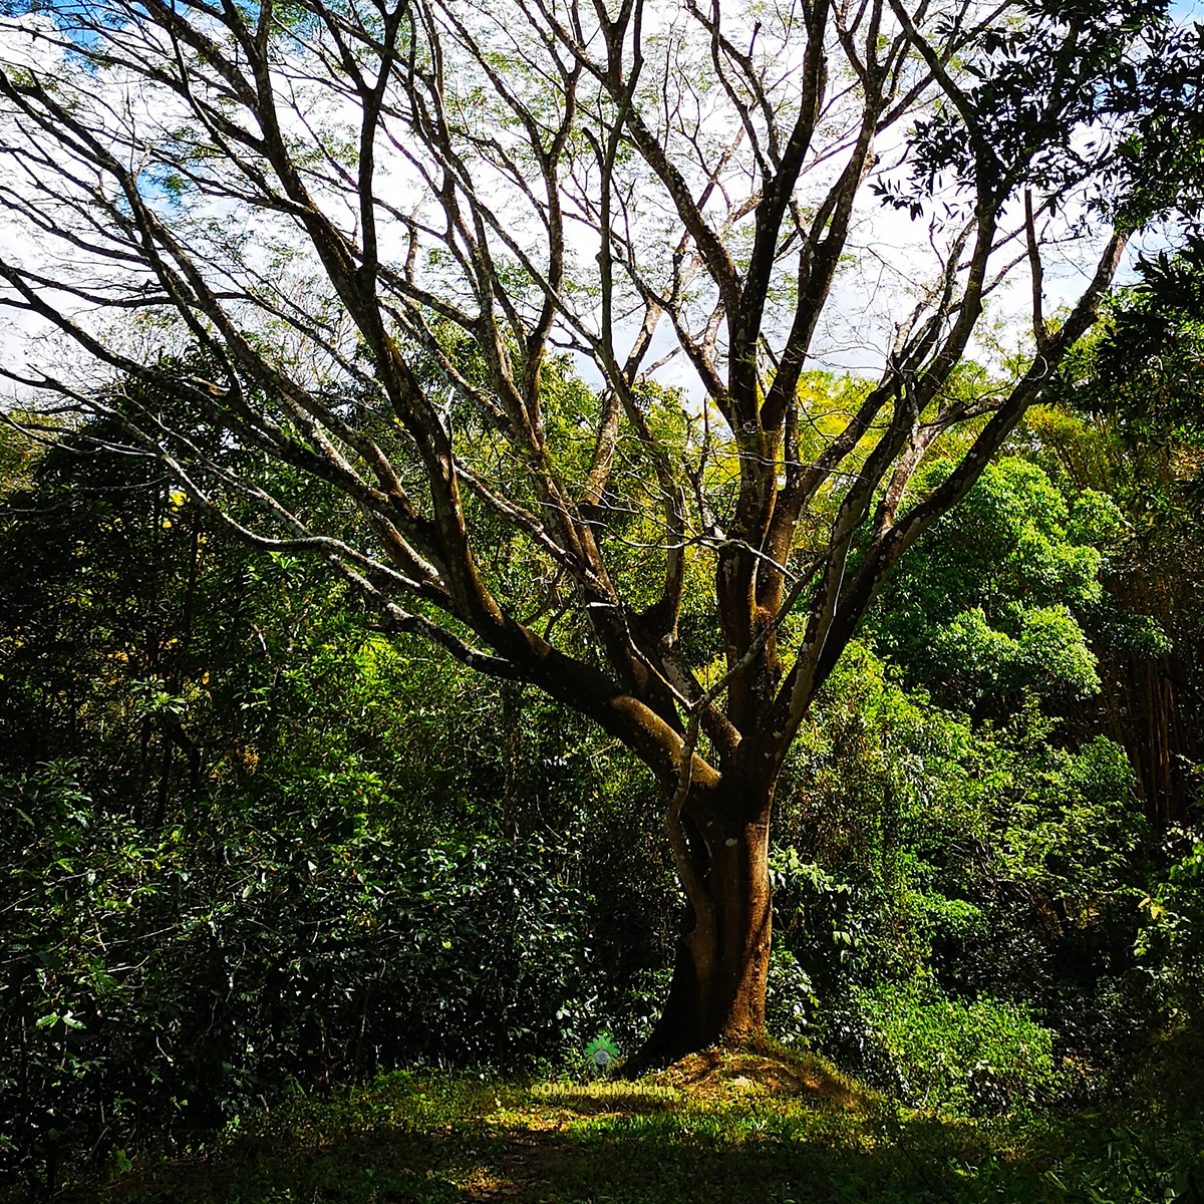 Rainforest at OM Jungle Medecine in Samara, Costa Rica.